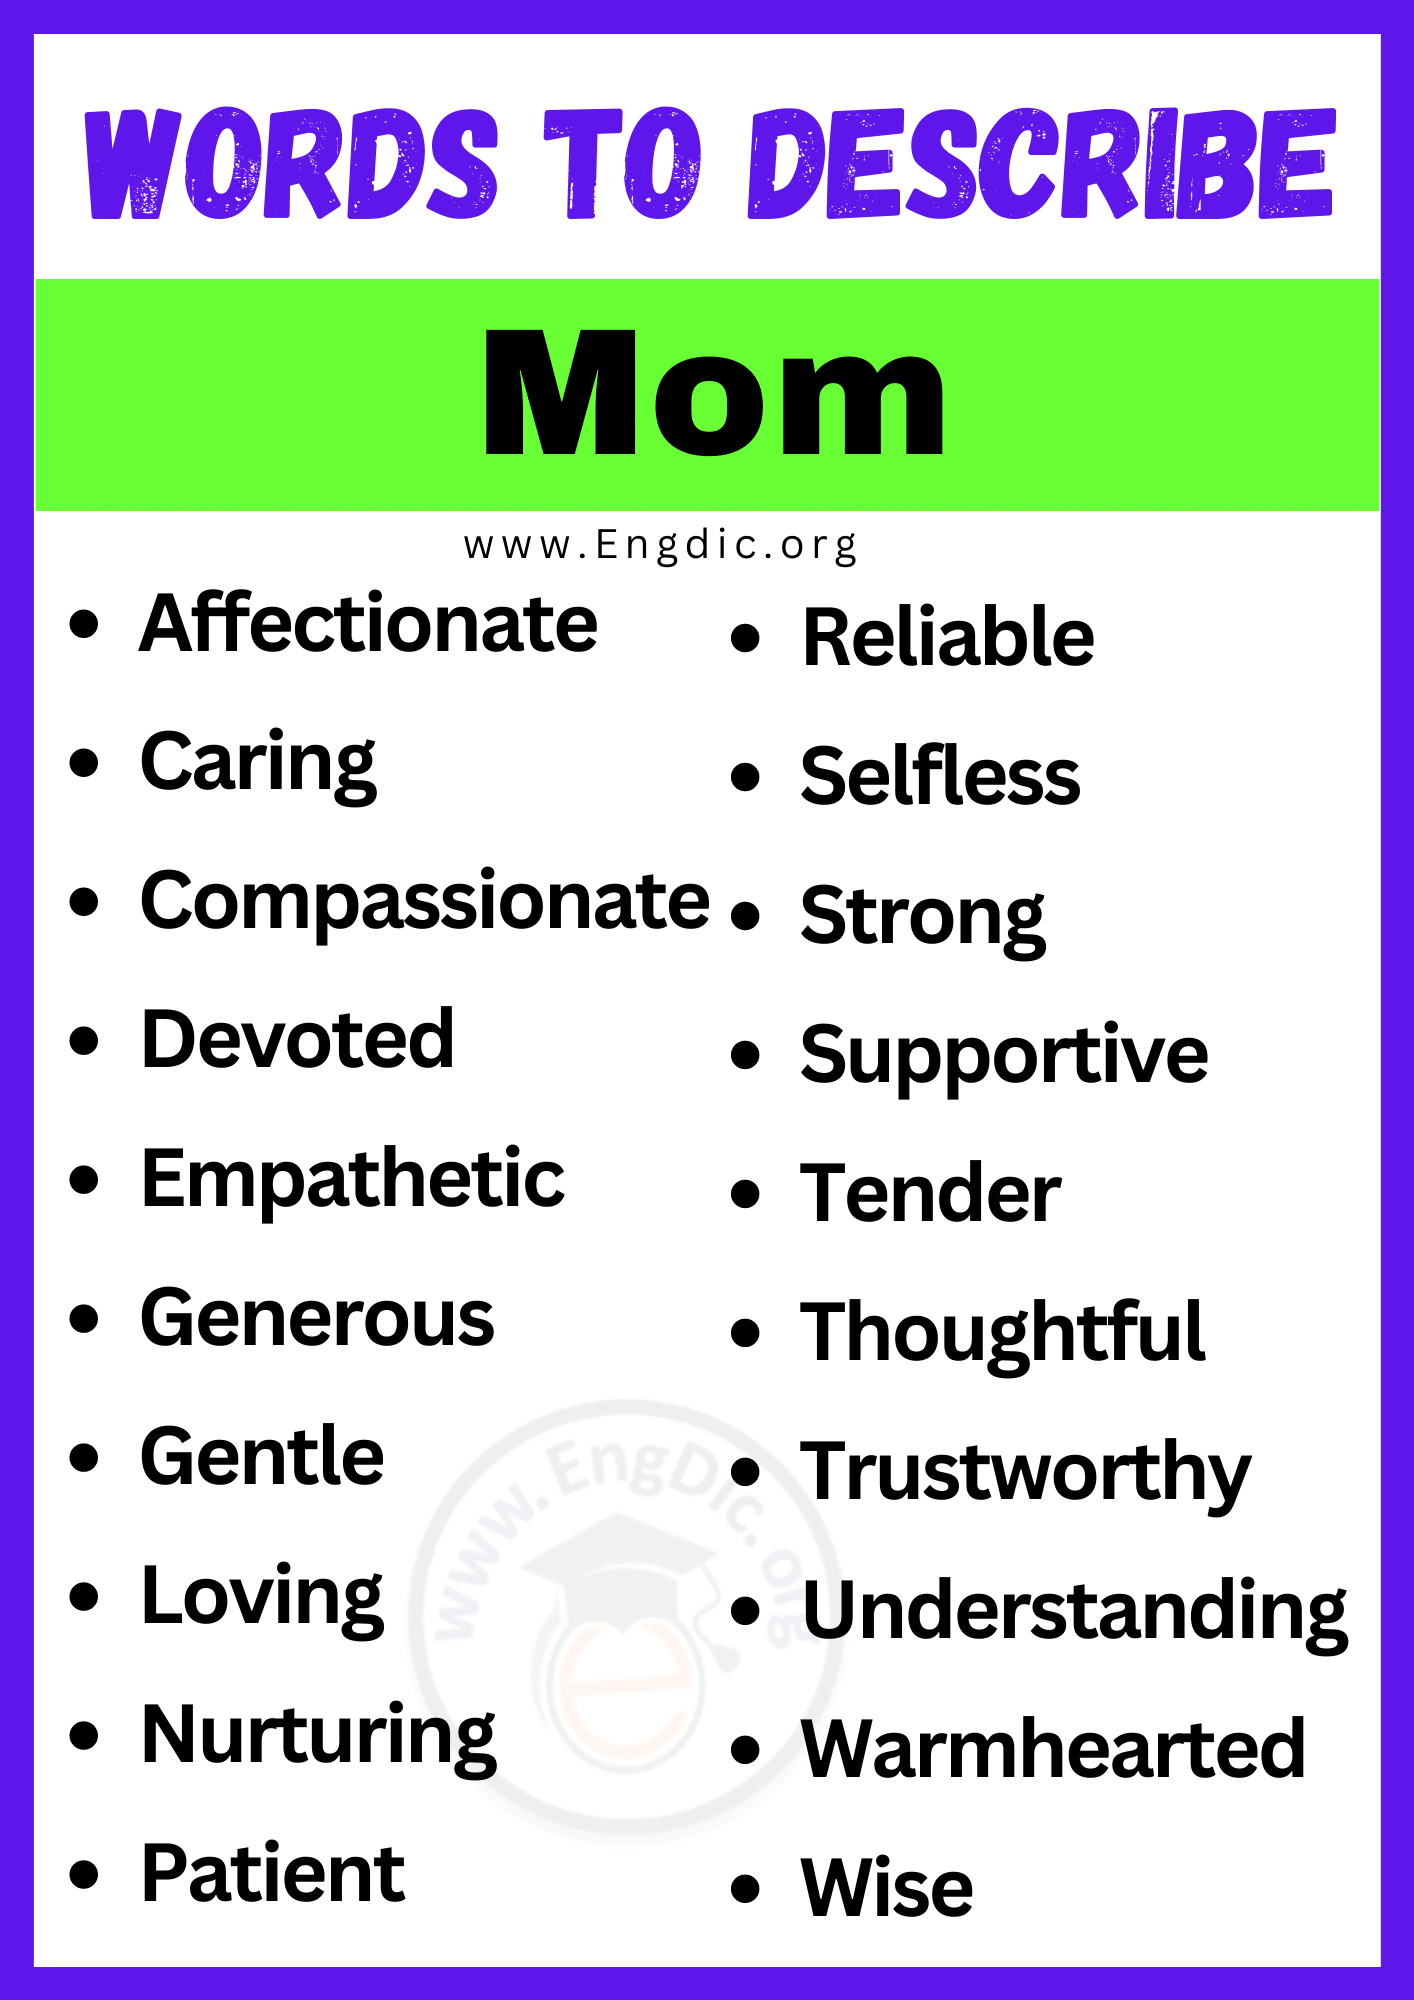 Words to Describe Mom